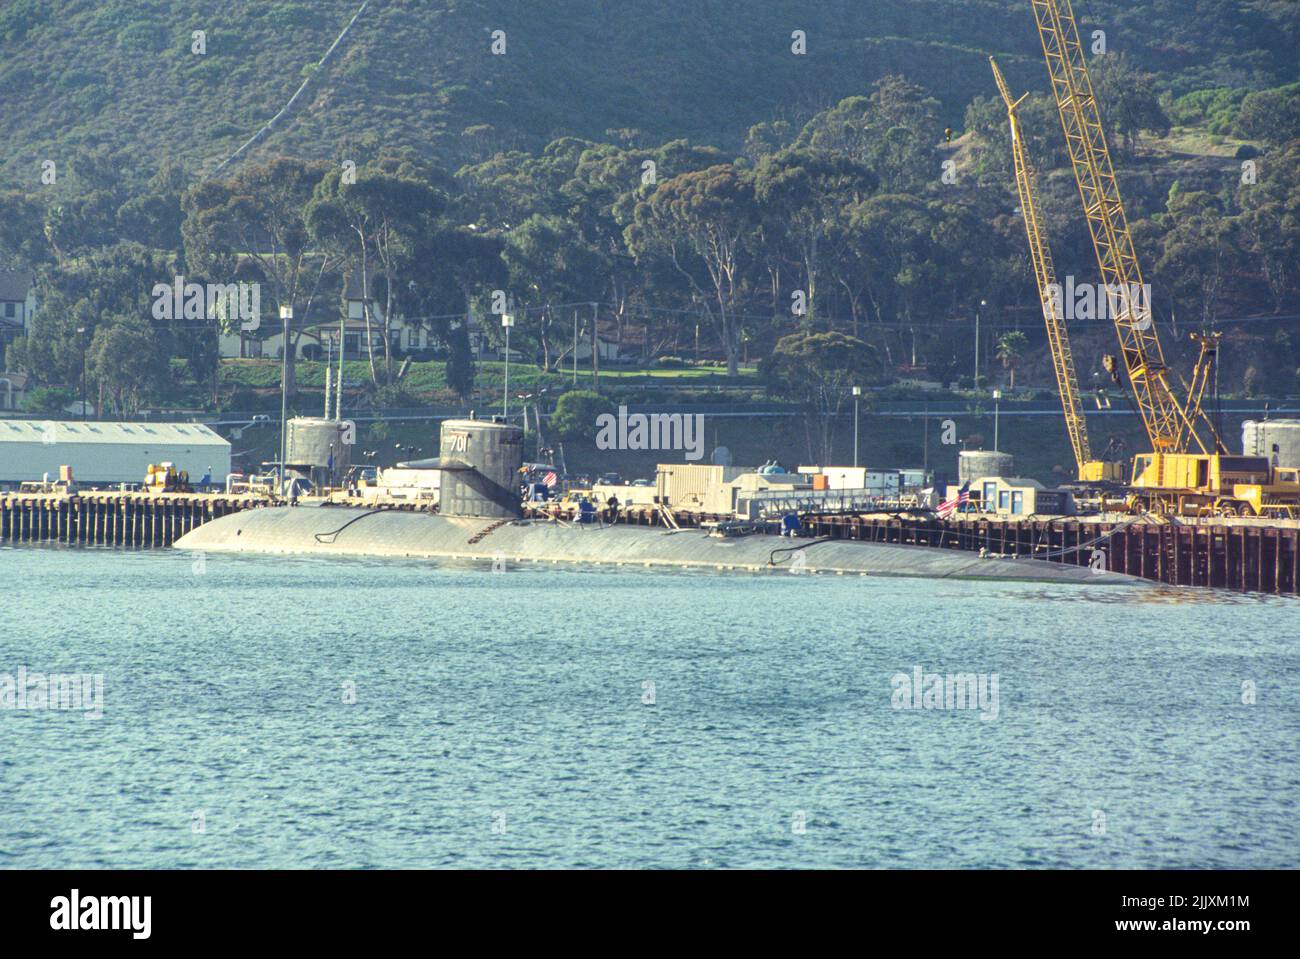 USS La Jolla  submarine docked at Naval Base Point Loma, San Diego, California Stock Photo